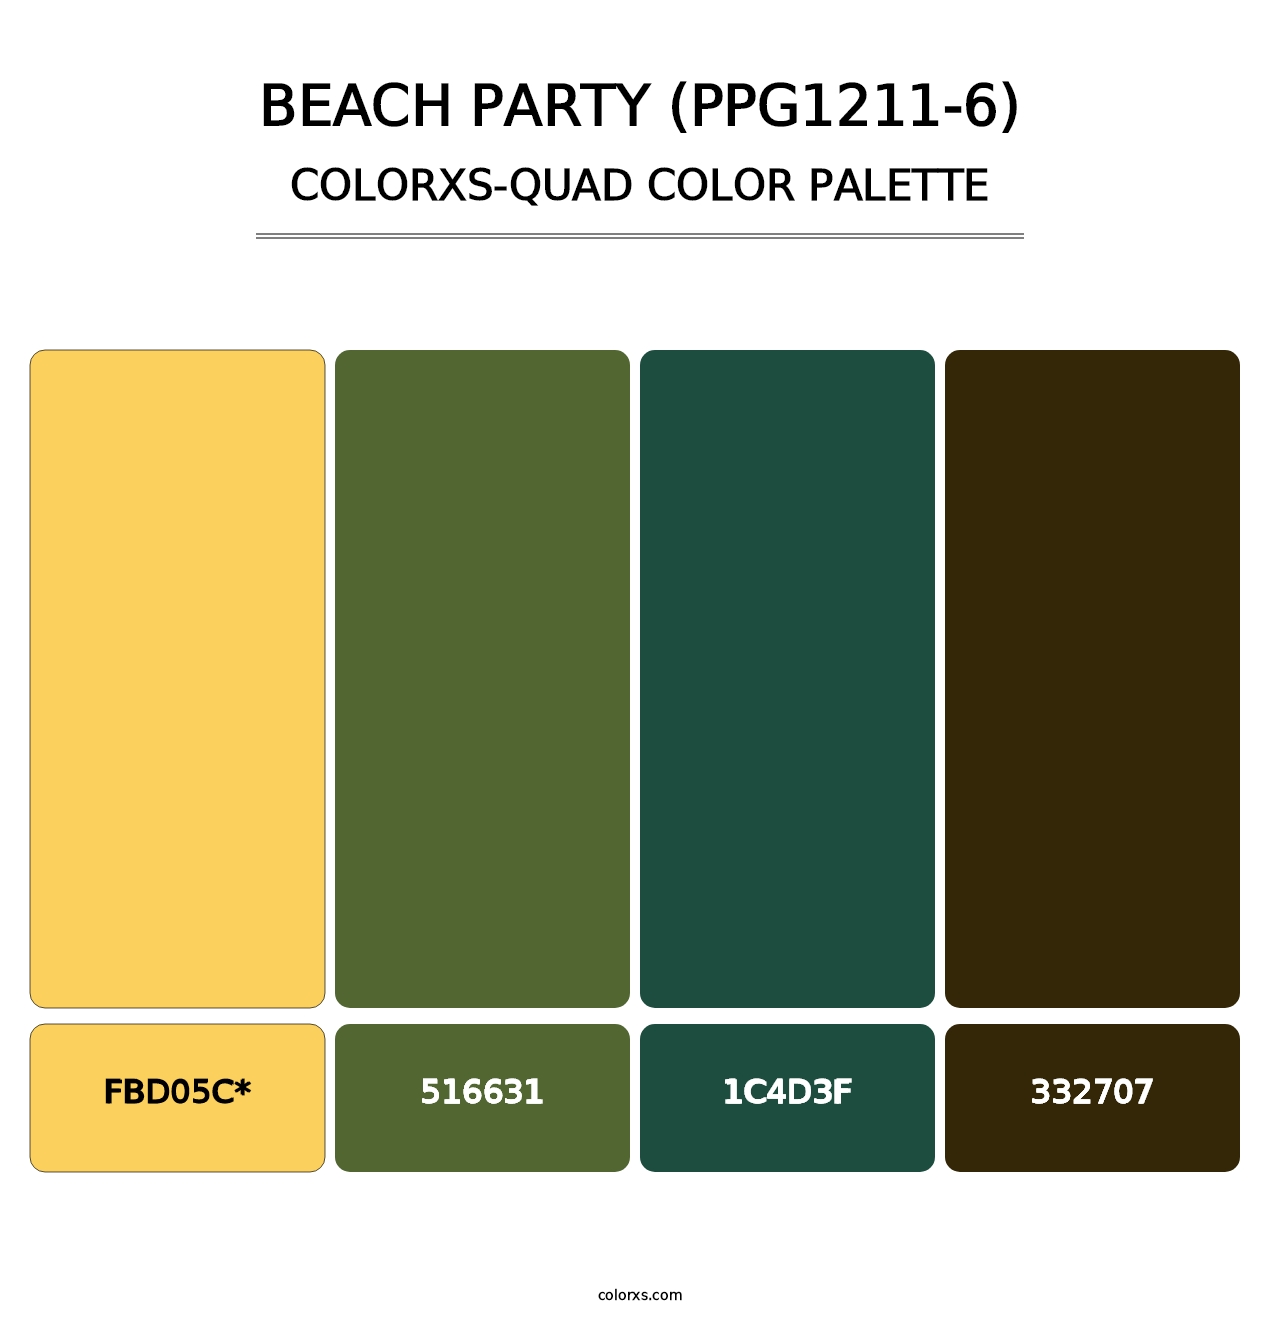 Beach Party (PPG1211-6) - Colorxs Quad Palette